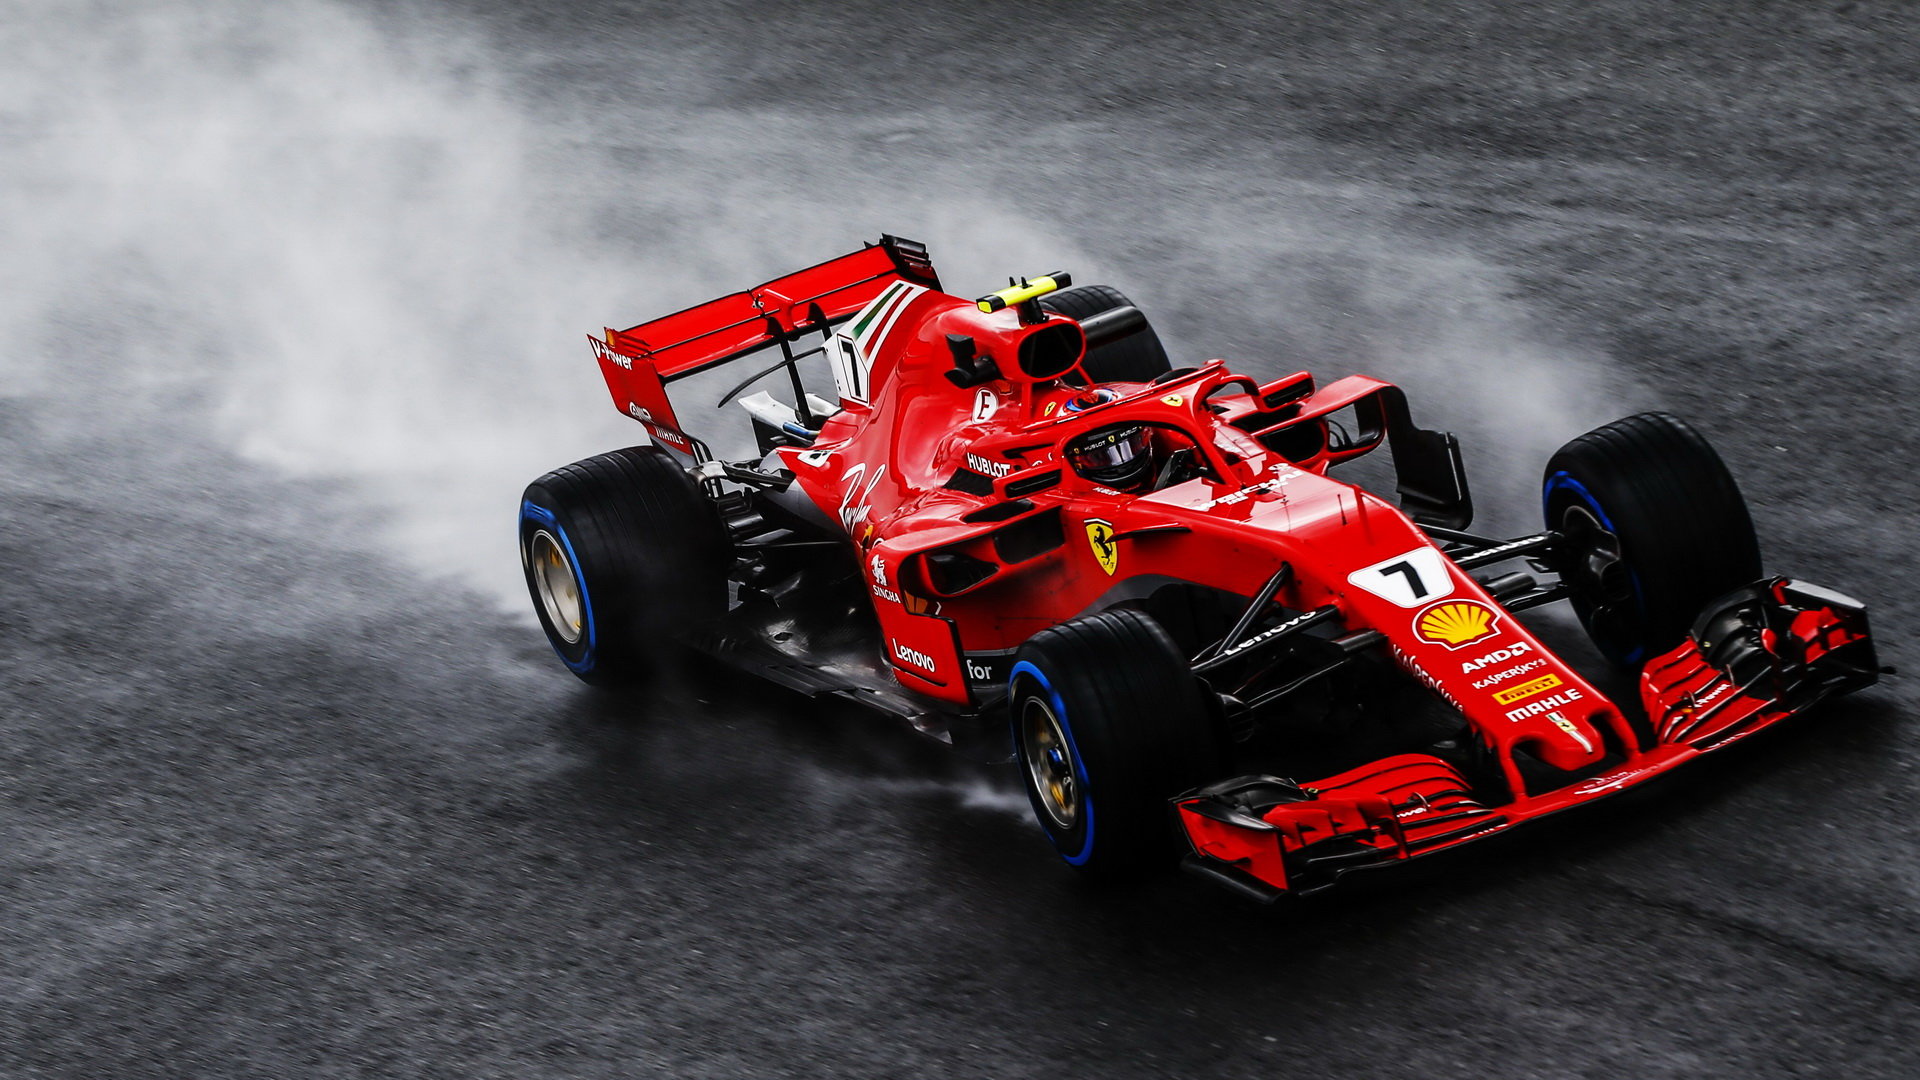 Kimi Räikkönen při pátečním deštivém tréninku na Monze